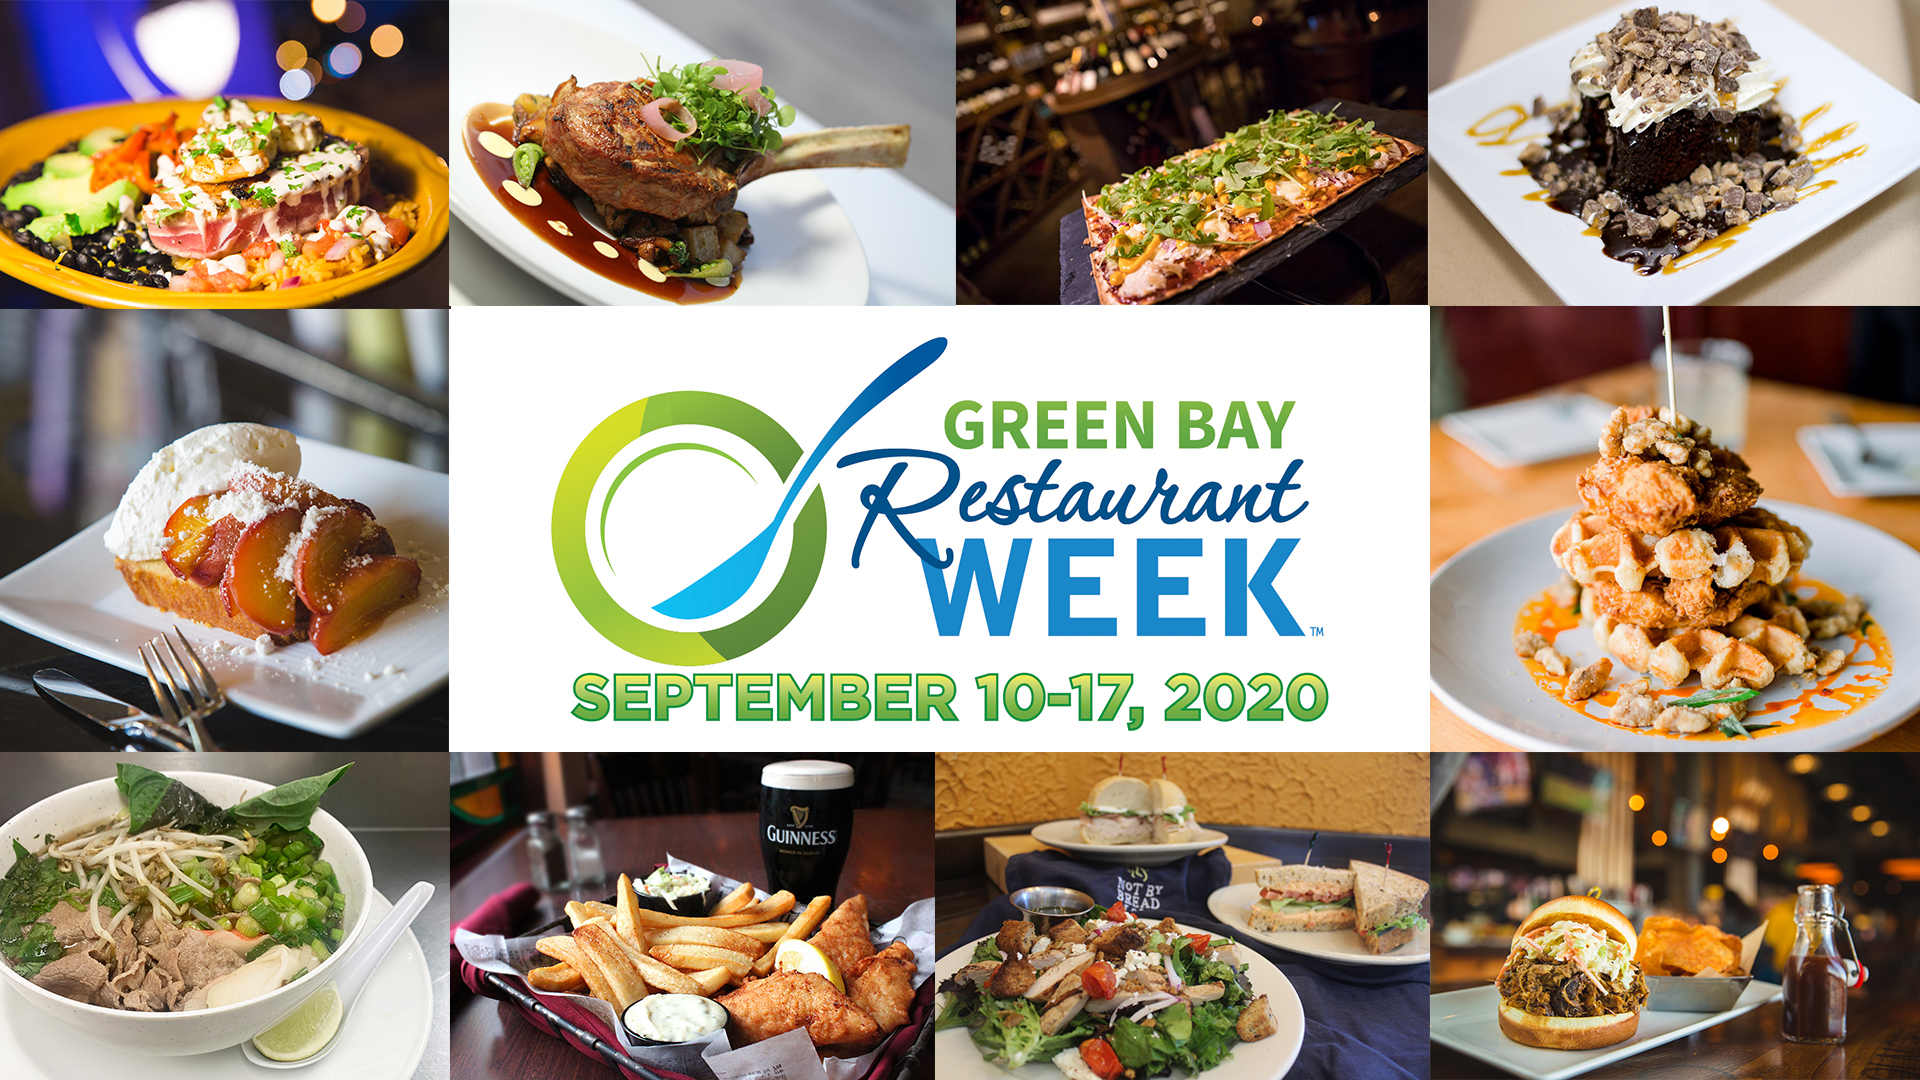 Green Bay Restaurant Week Returns September 10-17, 2020